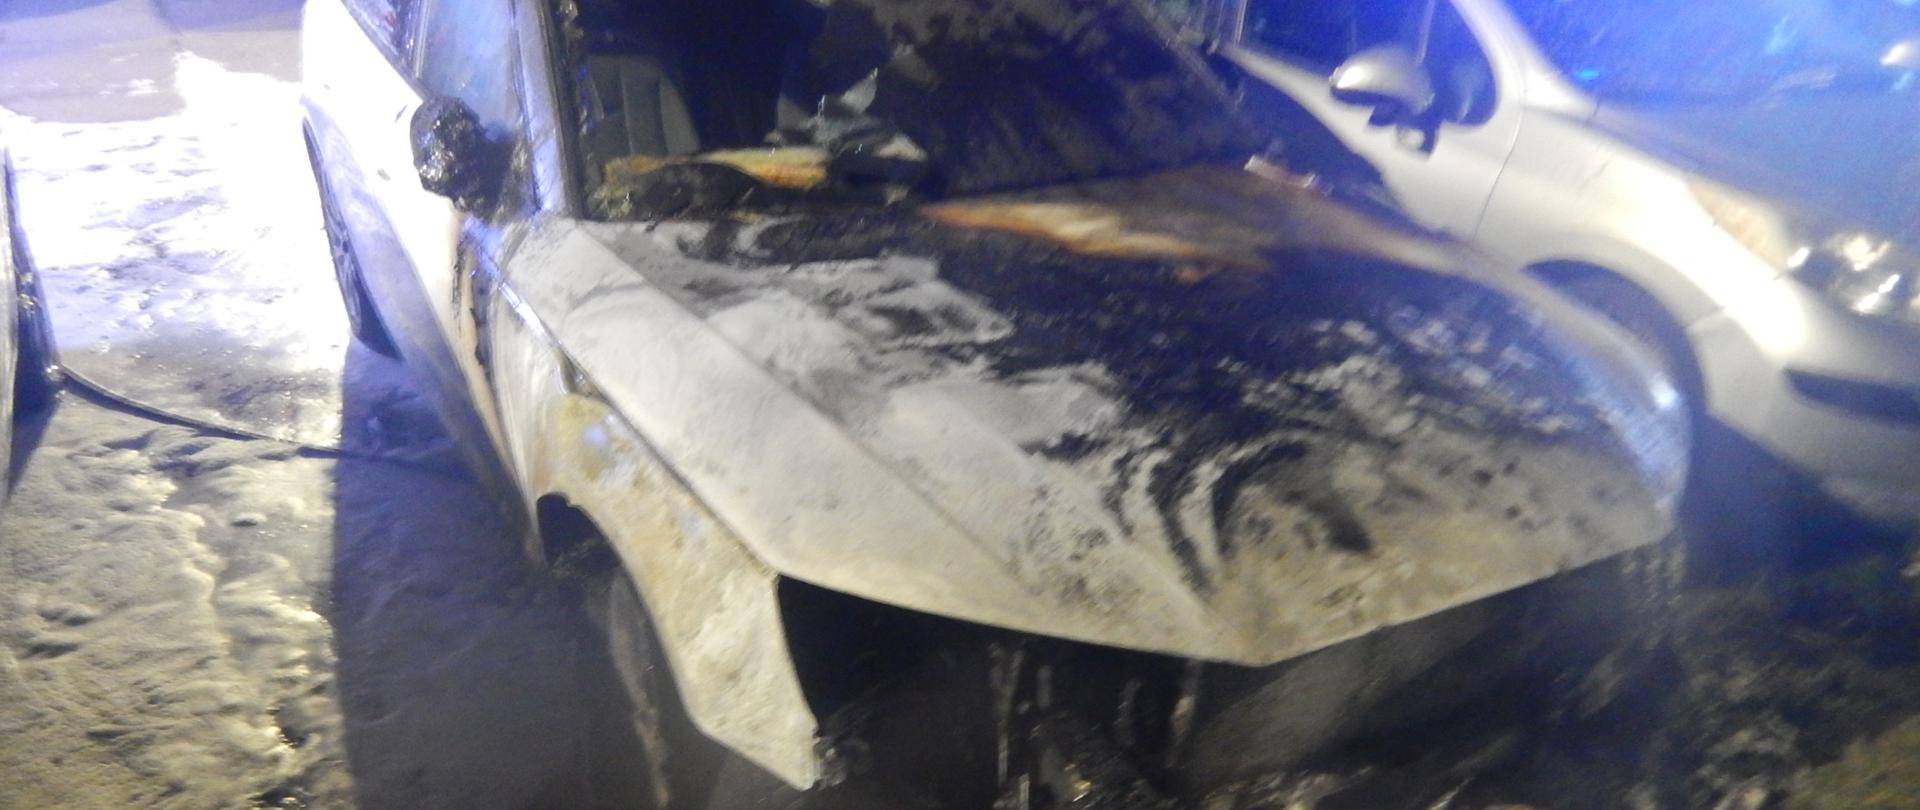 Zdjęcie przedstawia spaloną komorę silnika samochodu marki Audi koloru białego.